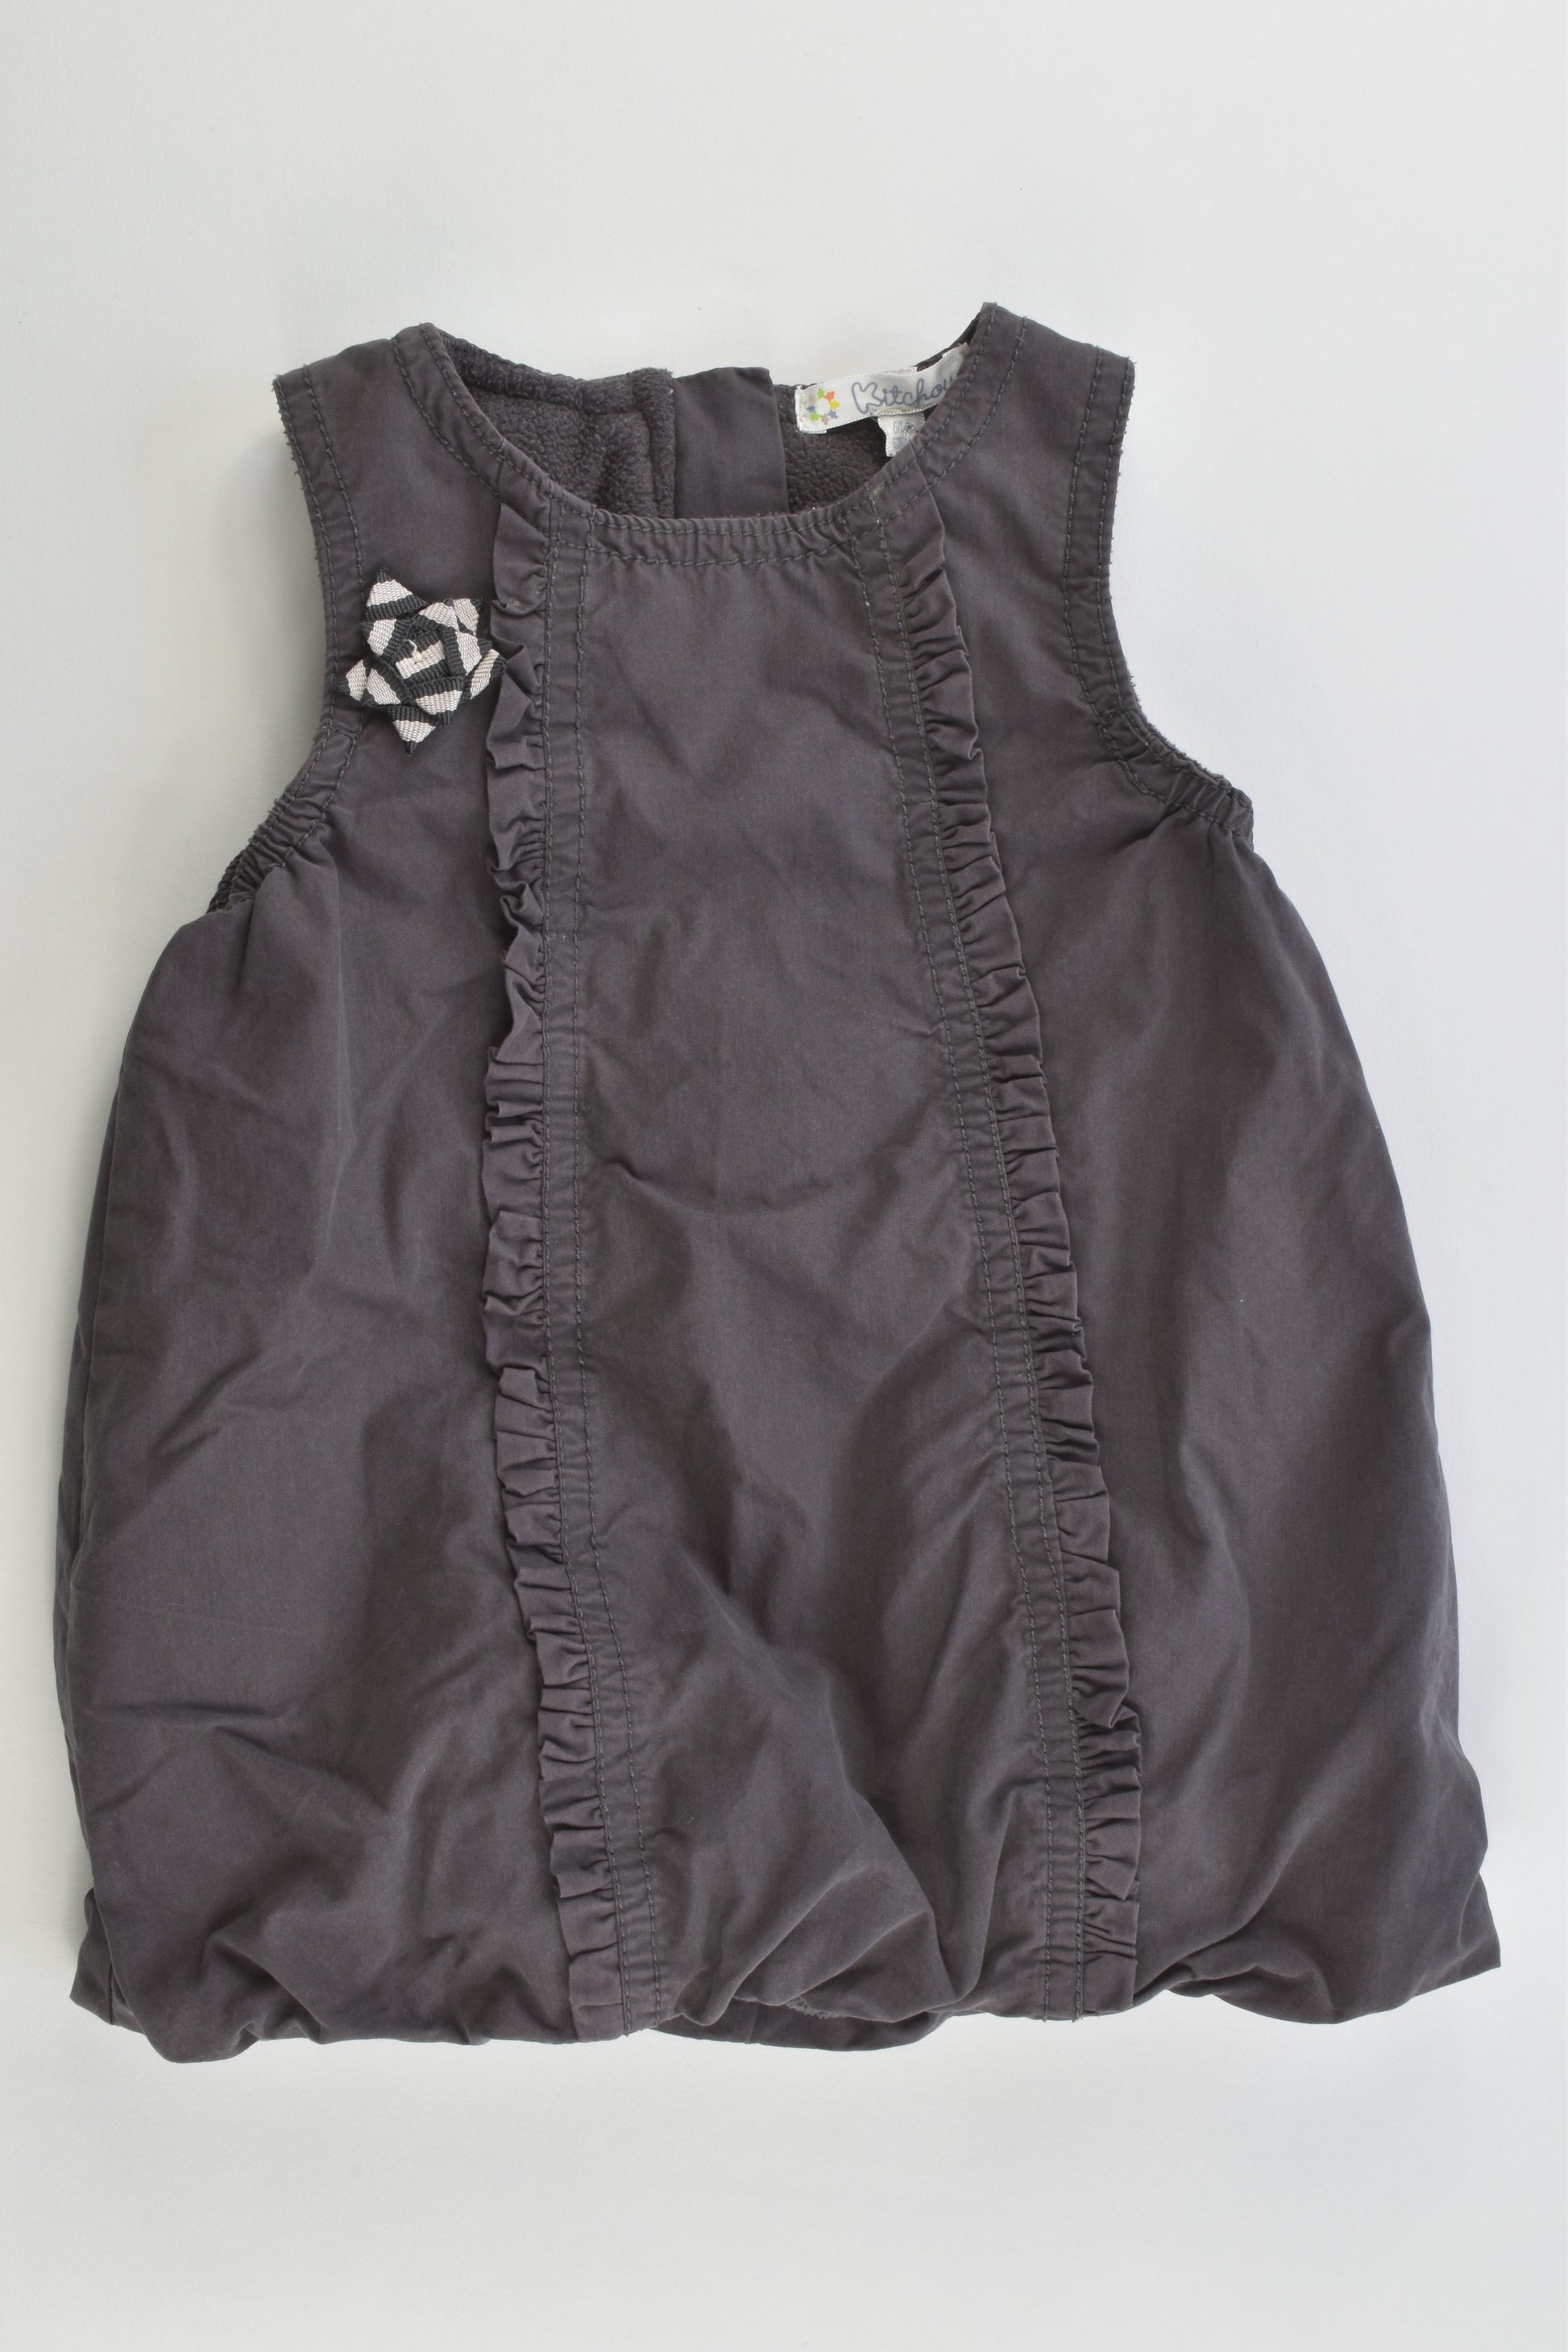 Kitchoun (France) Size 00 (6 months, 67 cm) Fleece Lined Dress